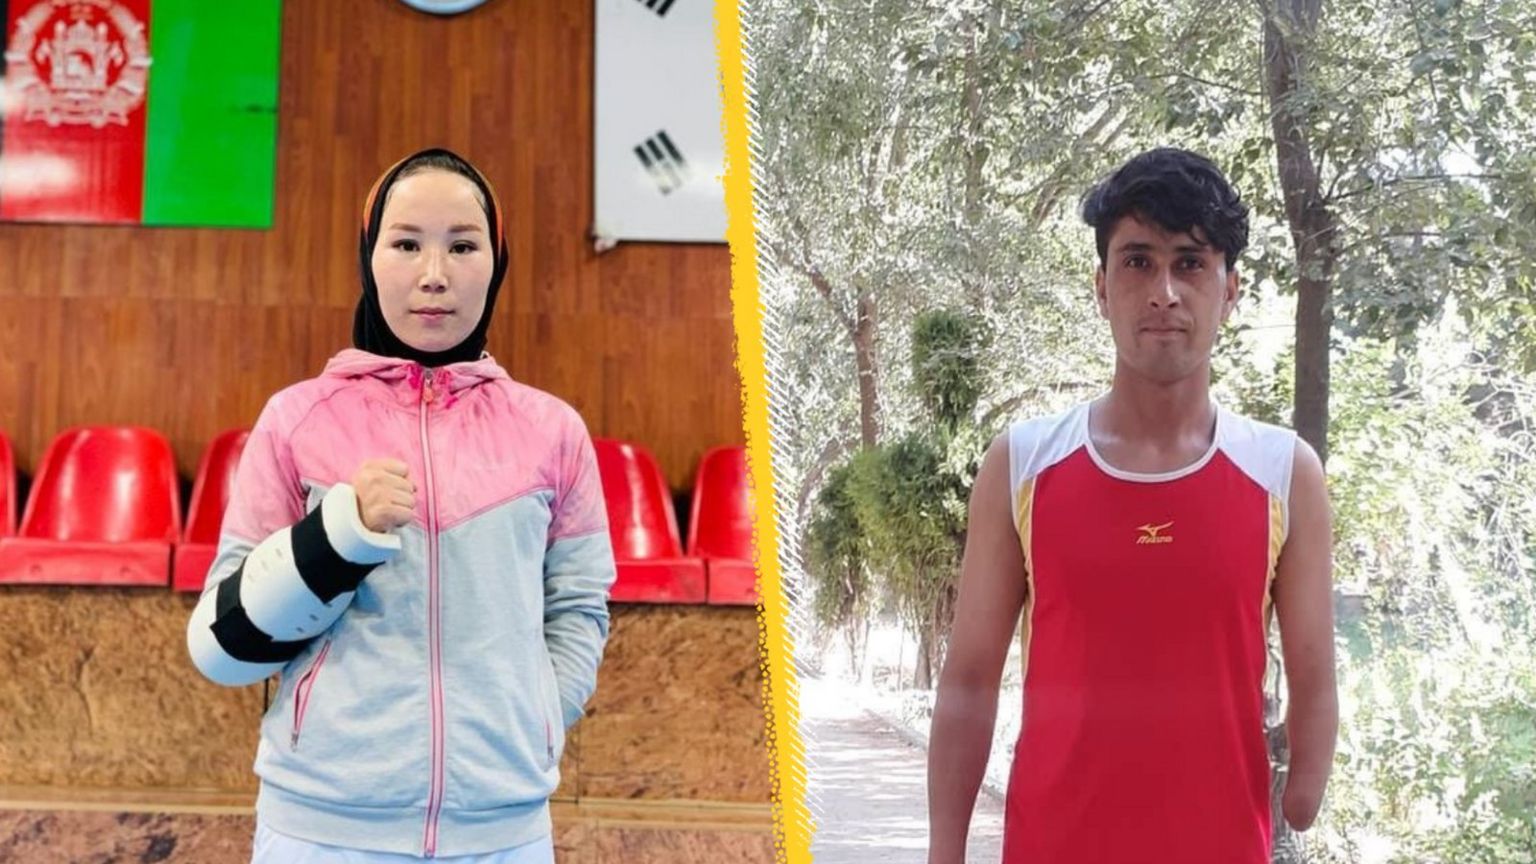 Taekwondo competitor Zakia Khudadadi and track athlete Hossain Rasouli